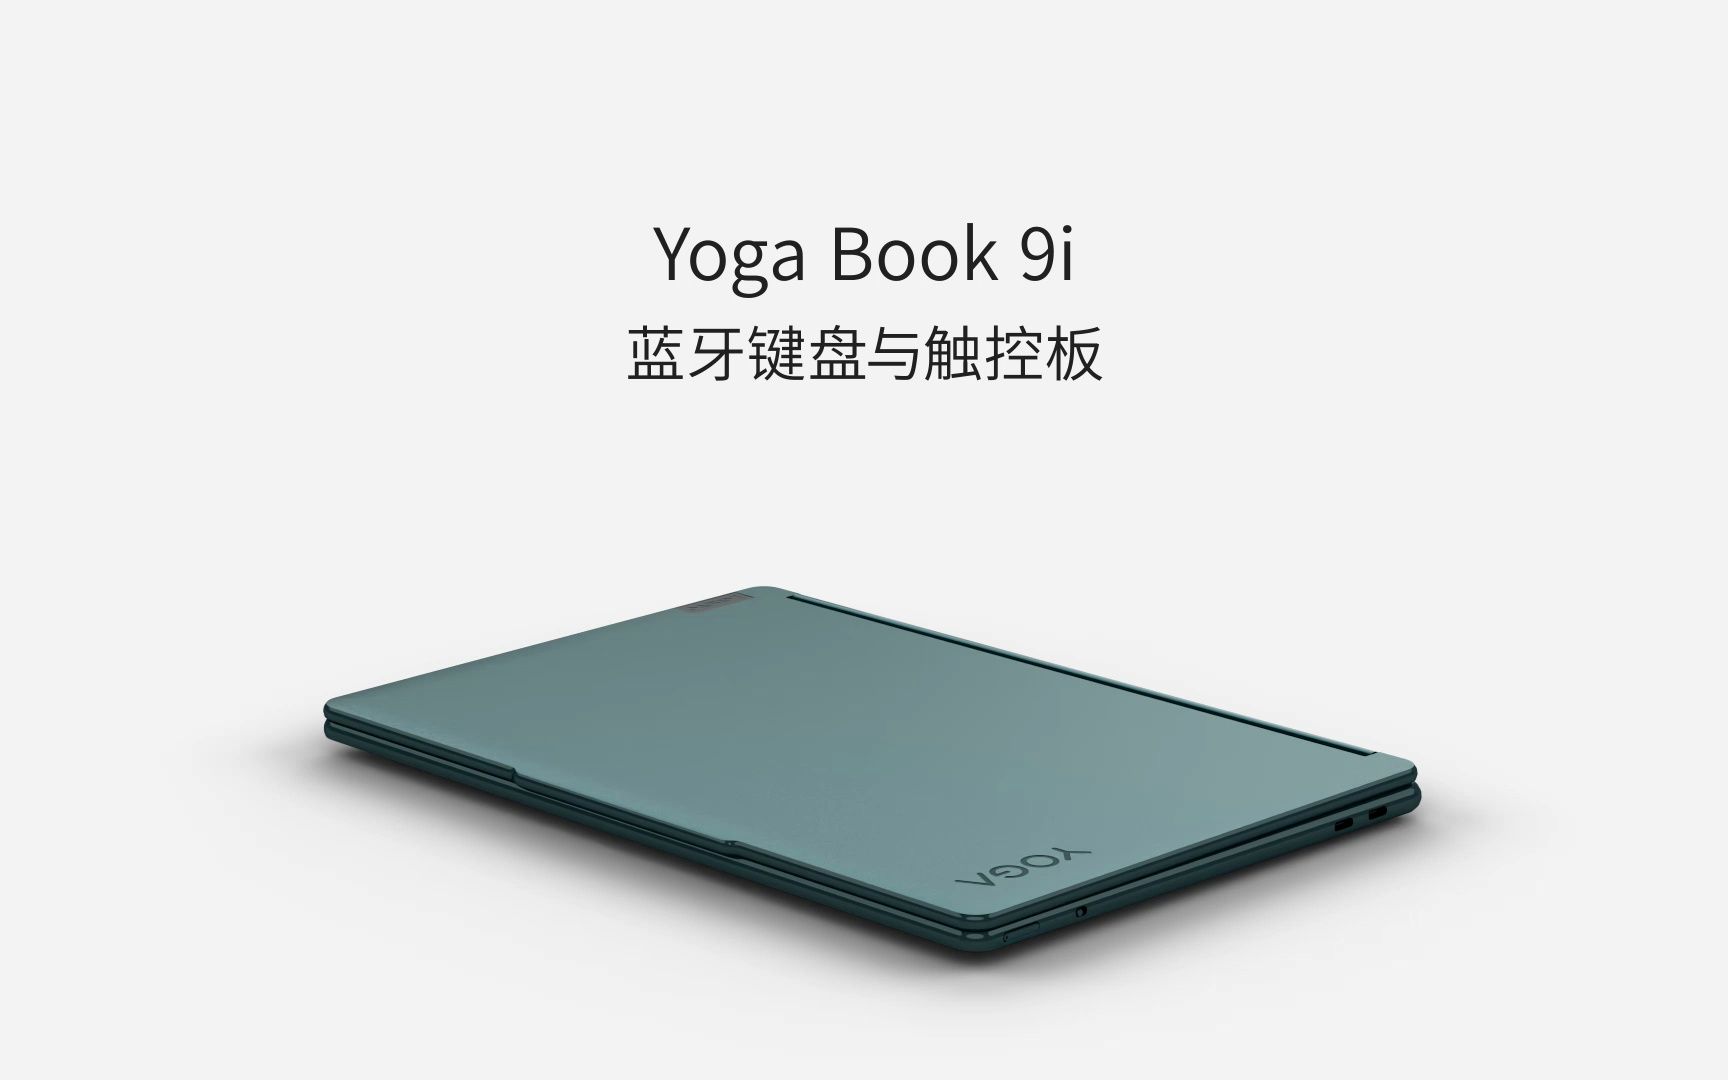 【玩机小技巧】Yoga Book 9i 蓝牙键盘与触控板丨YOGA使用小技巧